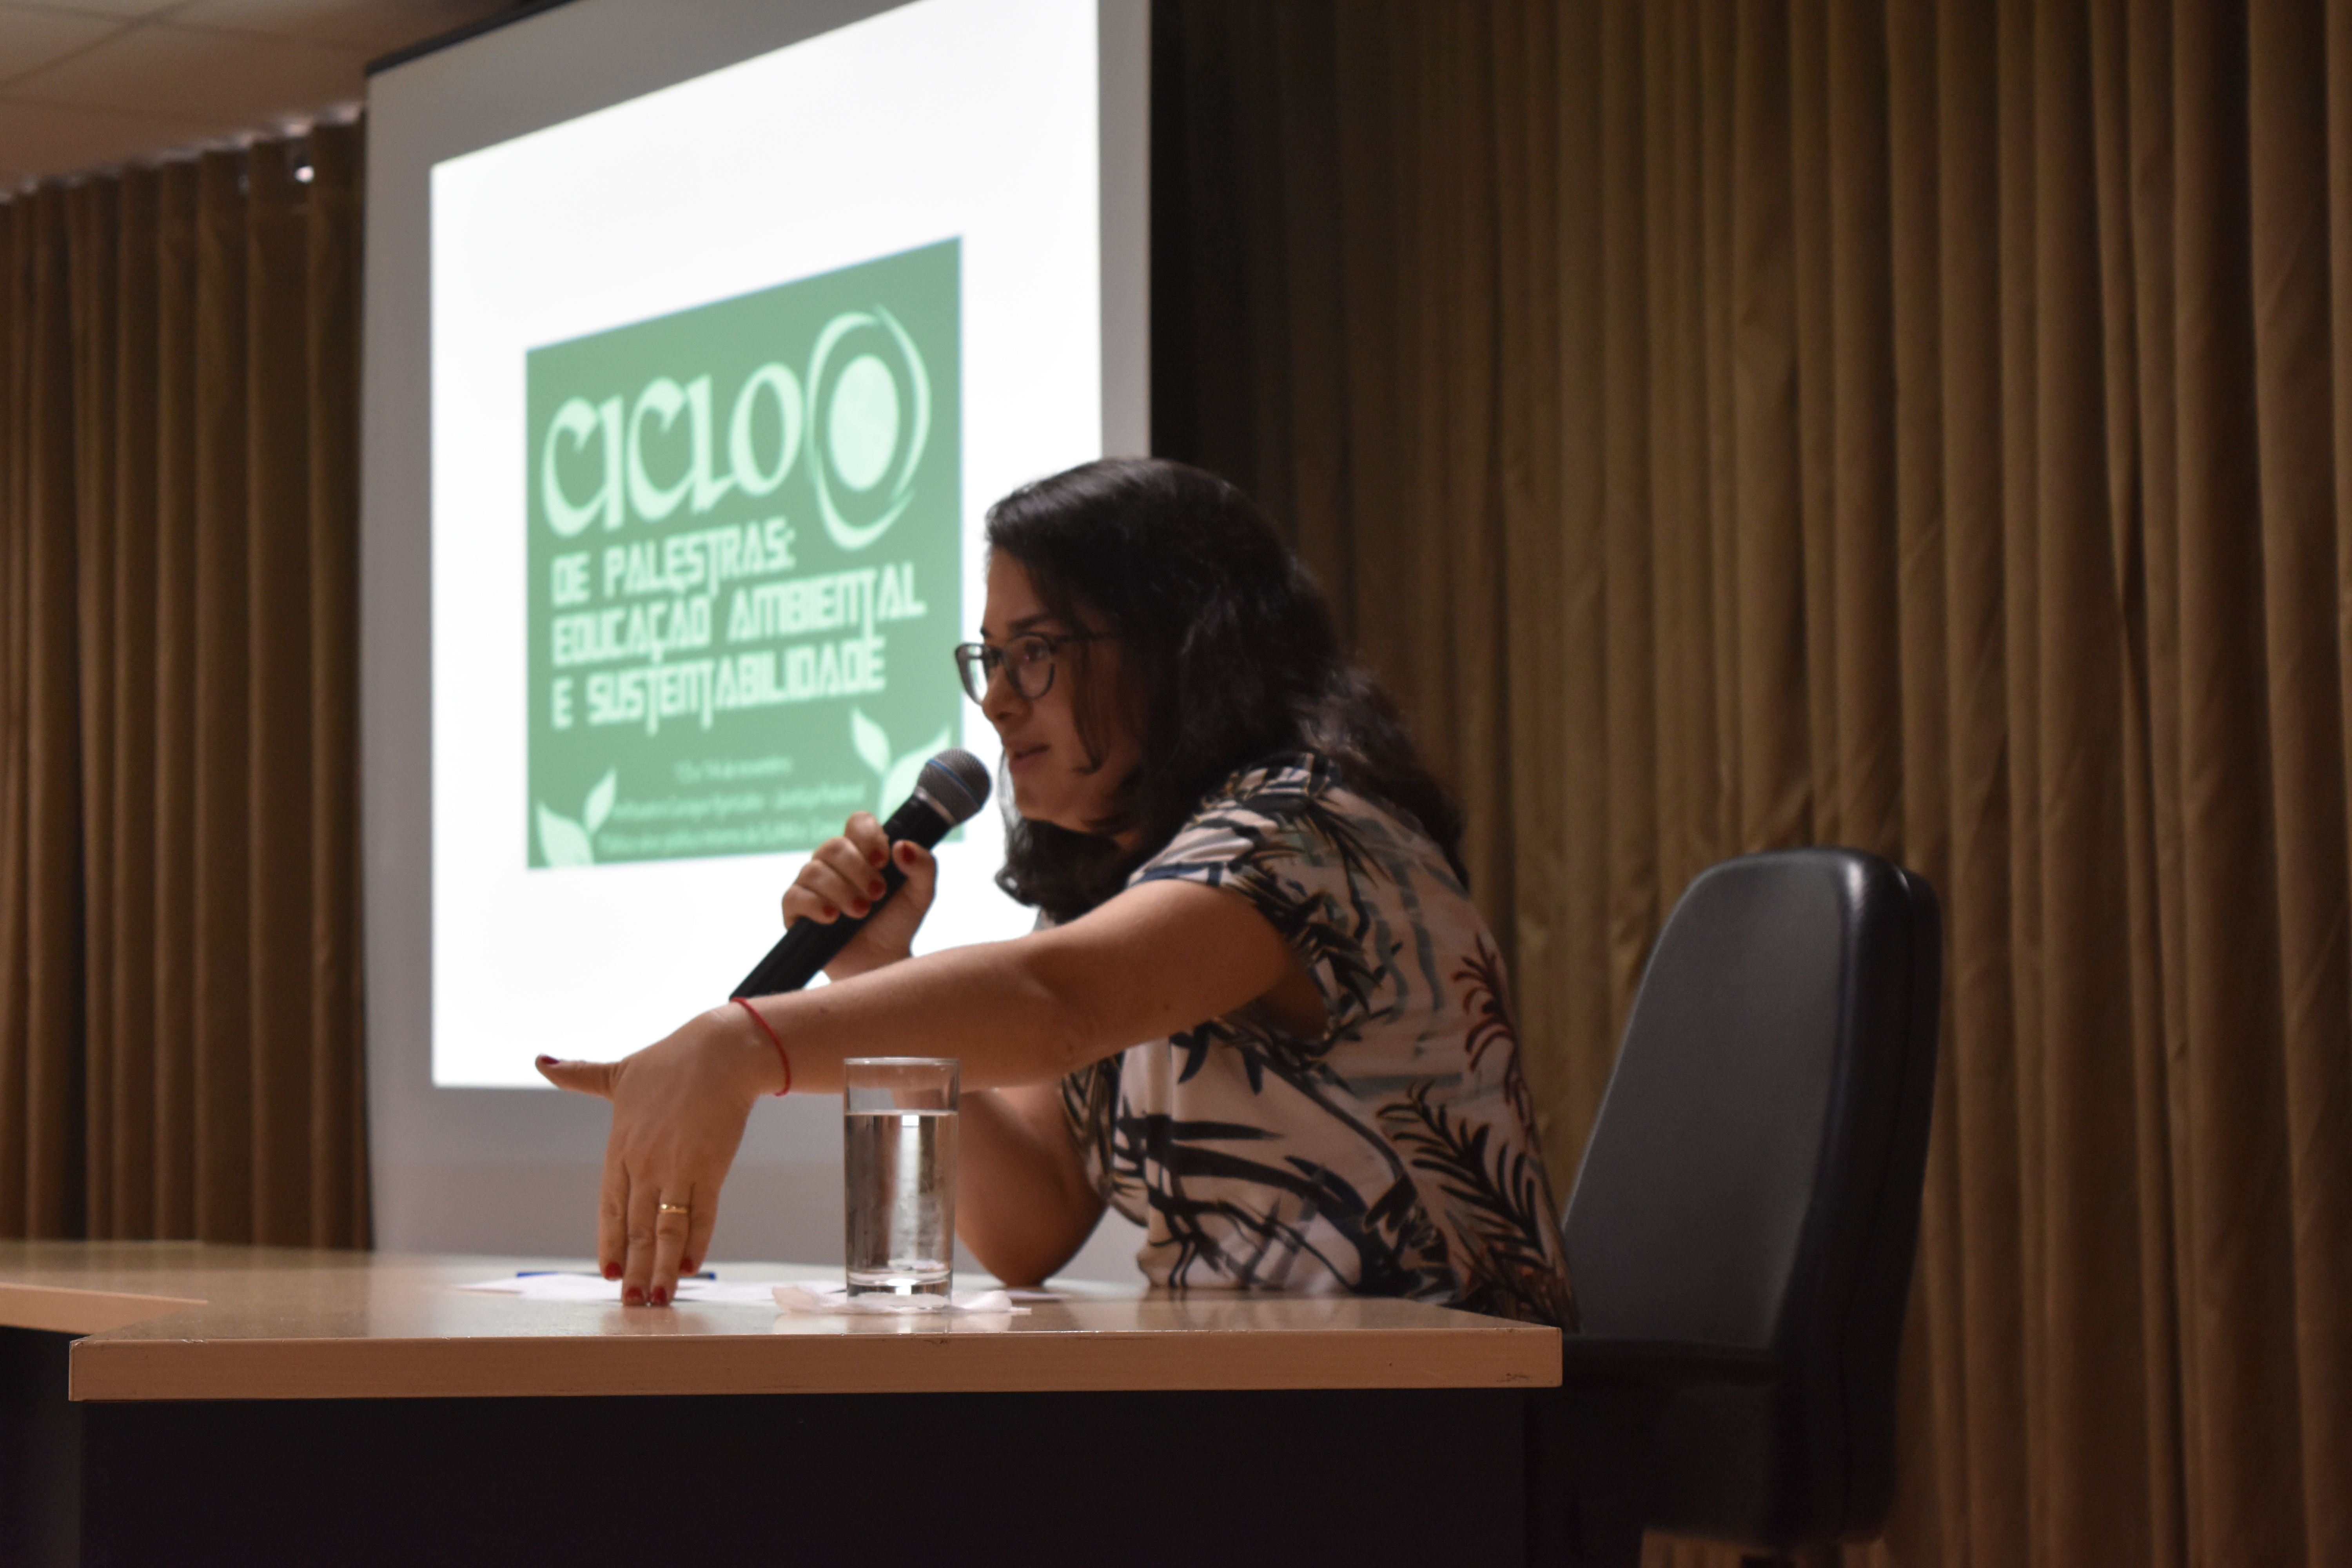 INSTITUCIONAL: Seção Judiciária do Amazonas promove debate e conscientização sobre meio ambiente e sustentabilidade